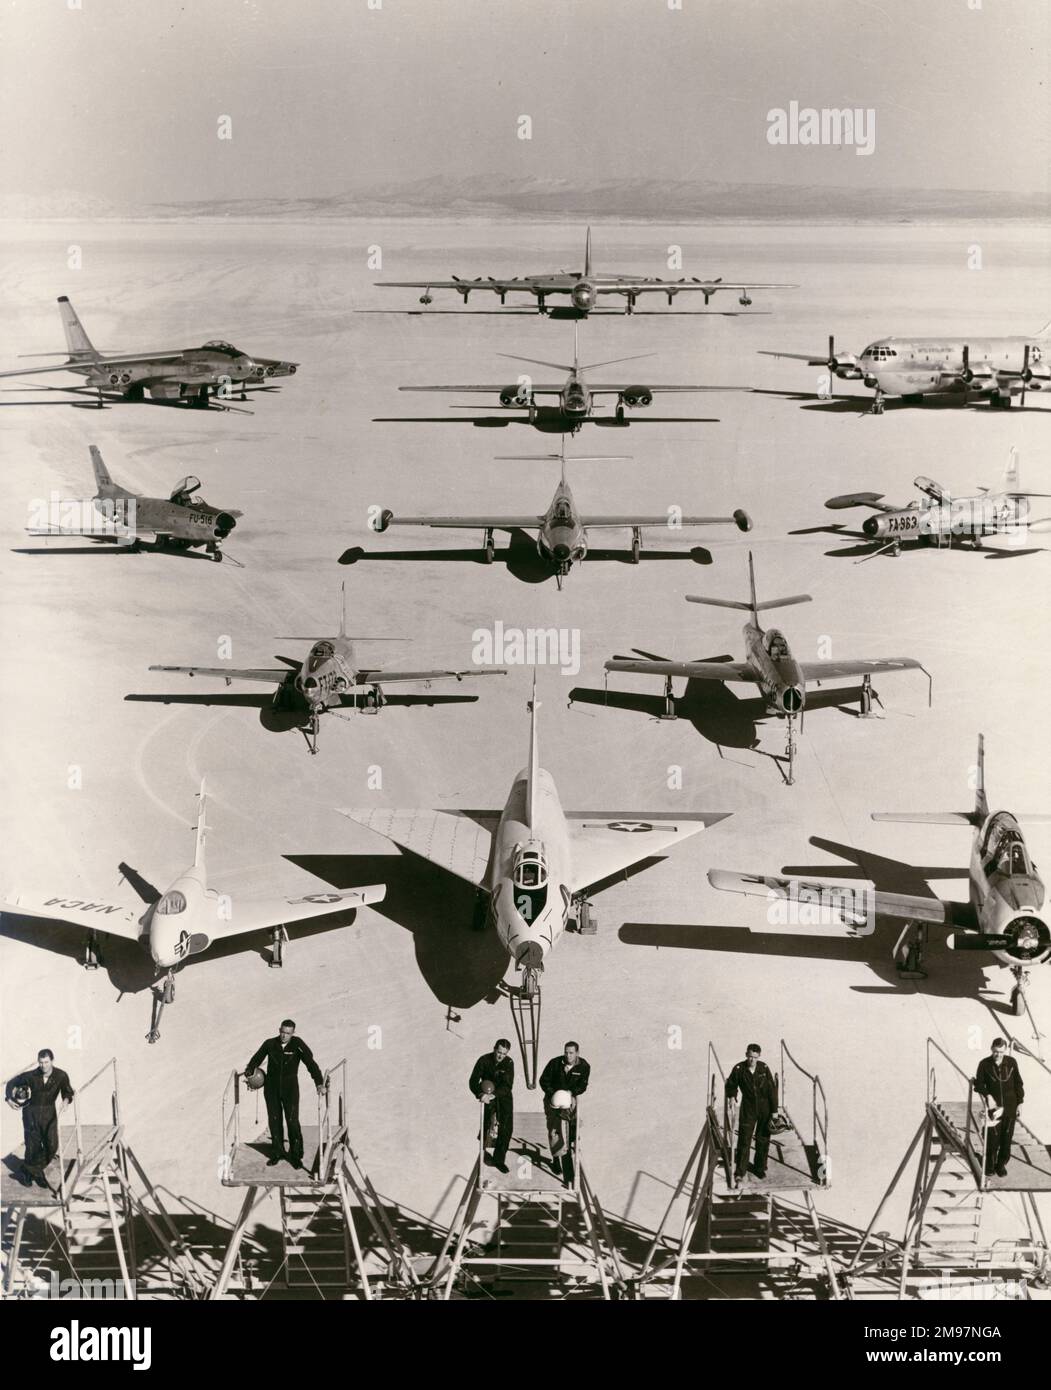 Il centro di test dei voli dell'aeronautica degli Stati Uniti, Edwards Air Force base, California. Piloti da sinistra: Maj Charles E. Yeager, Maj H.G. Russell, col F.J. Ascani, Brig Gen. J.S. Holtoner, Lt col Jack Ridley e Maj Arthur Murray. Aeromobili da sinistra e da davanti a dietro: Northrop X-4 Bantam, Convair XF-92, Nord America T-28, Lockheed T-33, Repubblica F-84F, Nord America F-86D, Northrop F-89, Lockheed F-94C, Boeing B-47, Nord America B-45, Boeing KC-97 e Convair B-36. Foto Stock